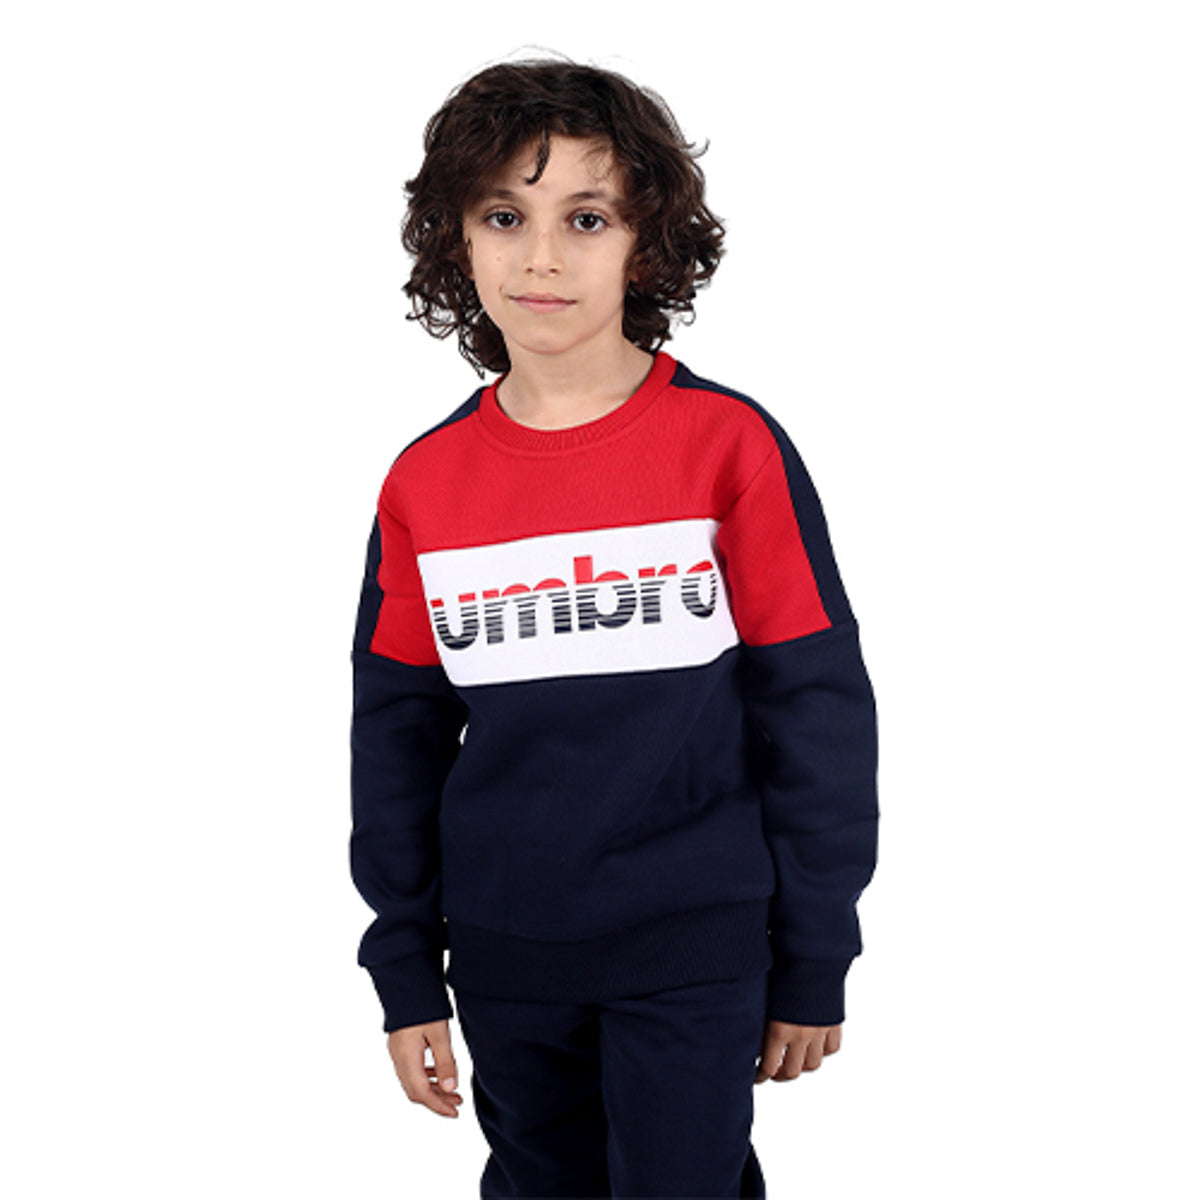 חליפת UMBRO פוטר לוגו באמצע לילדים